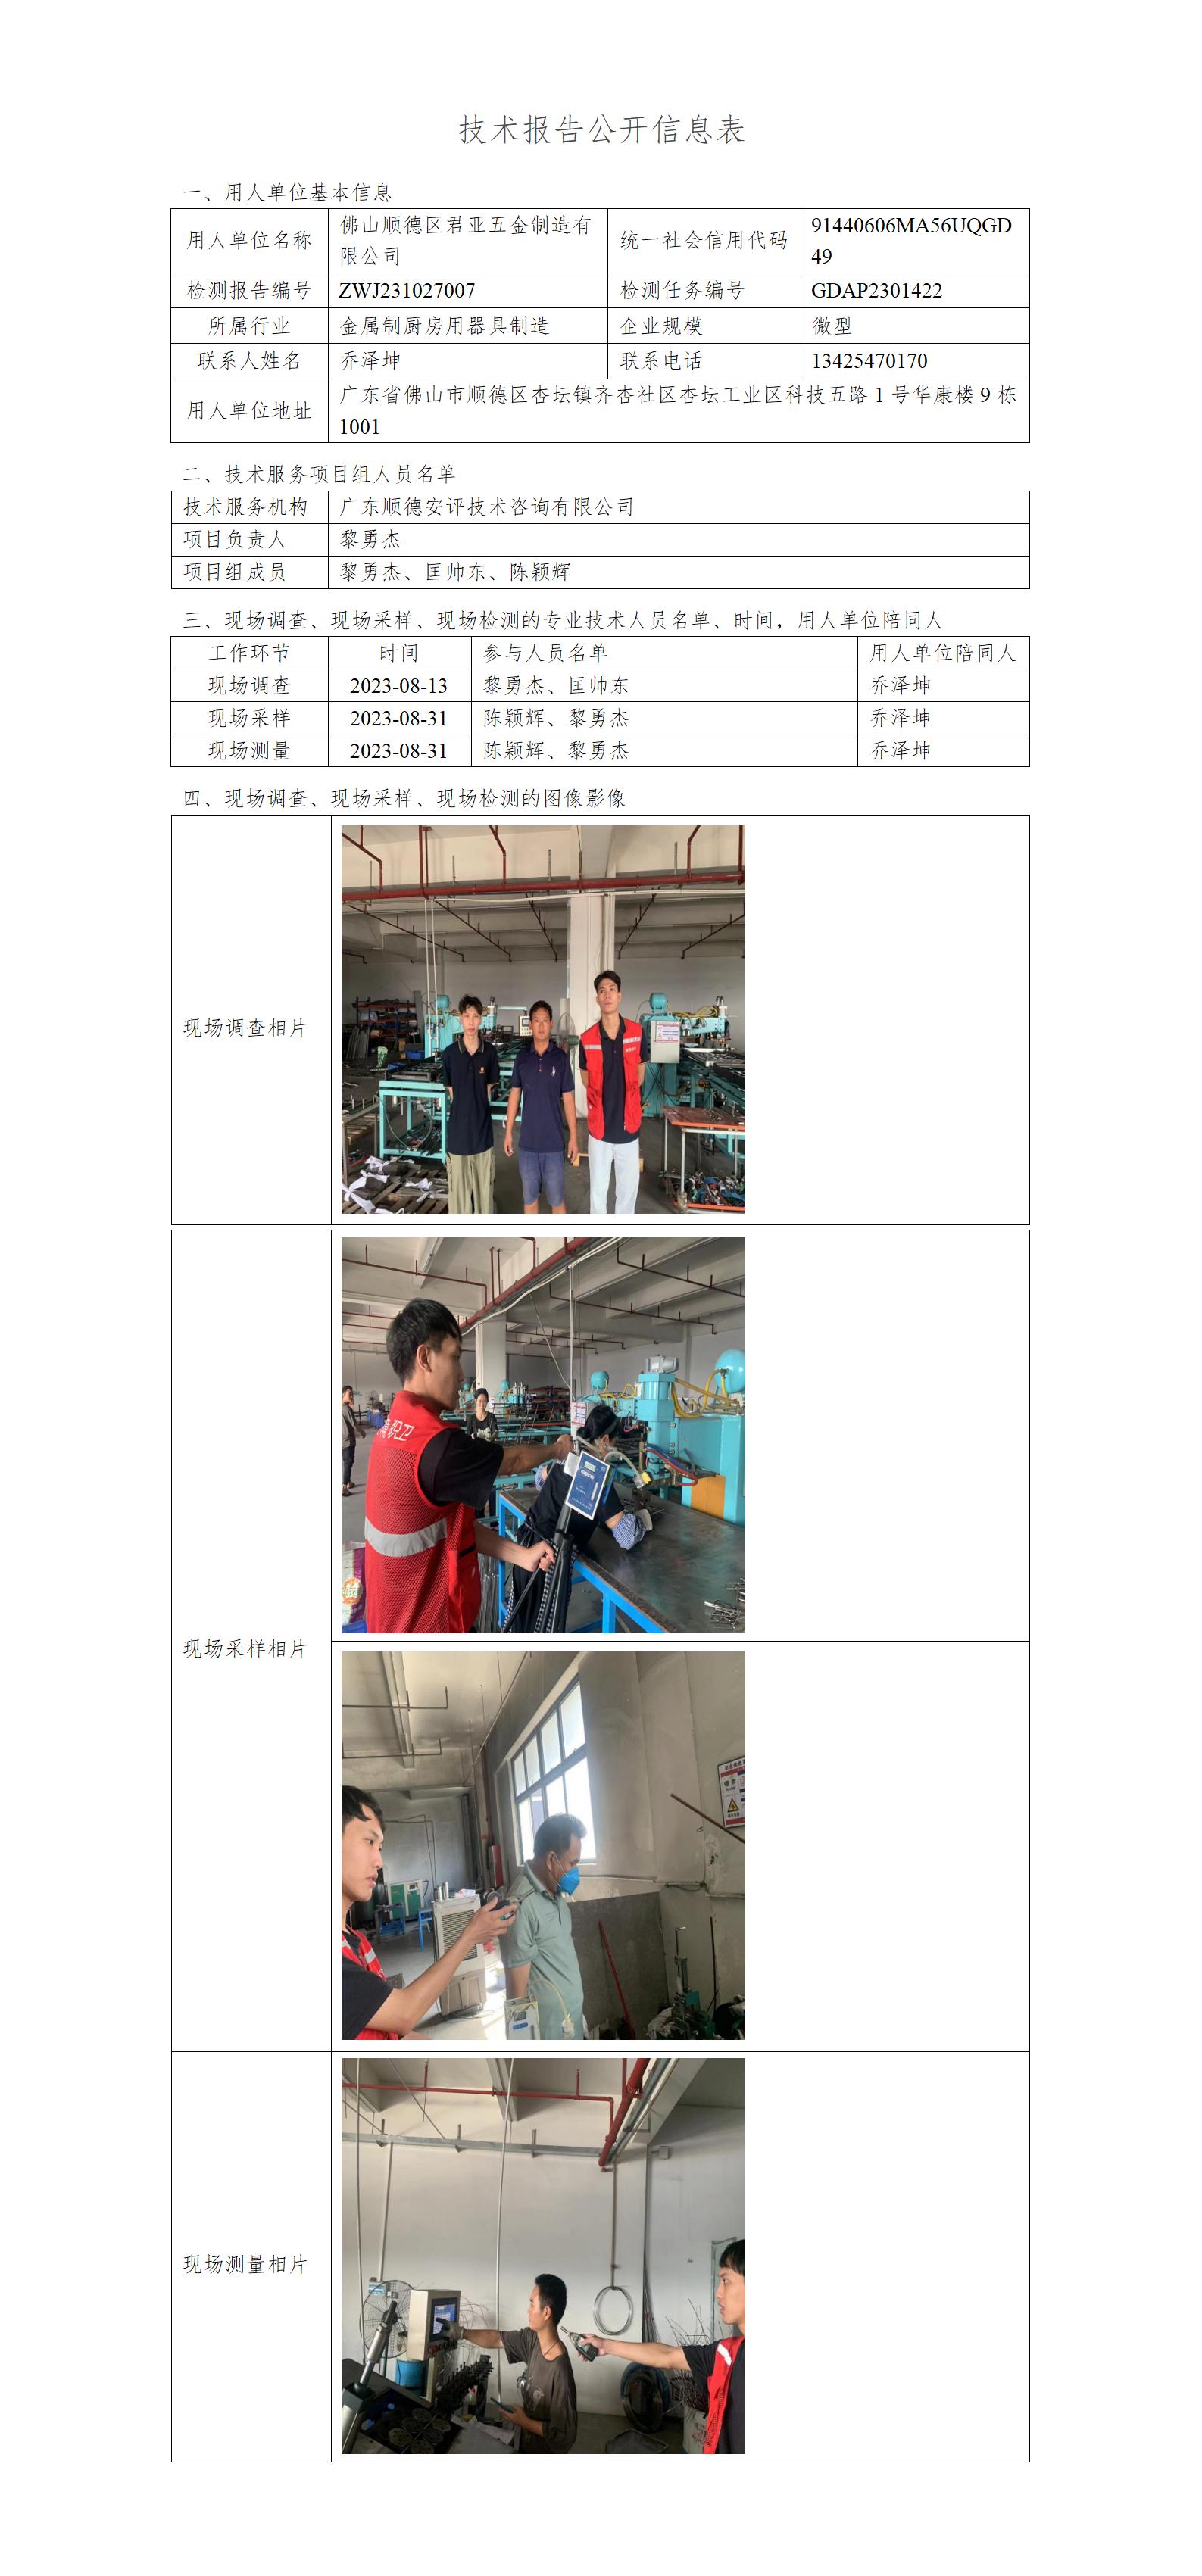 佛山顺德区君亚五金制造有限公司-2023-技术报告公开信息表_01.jpg